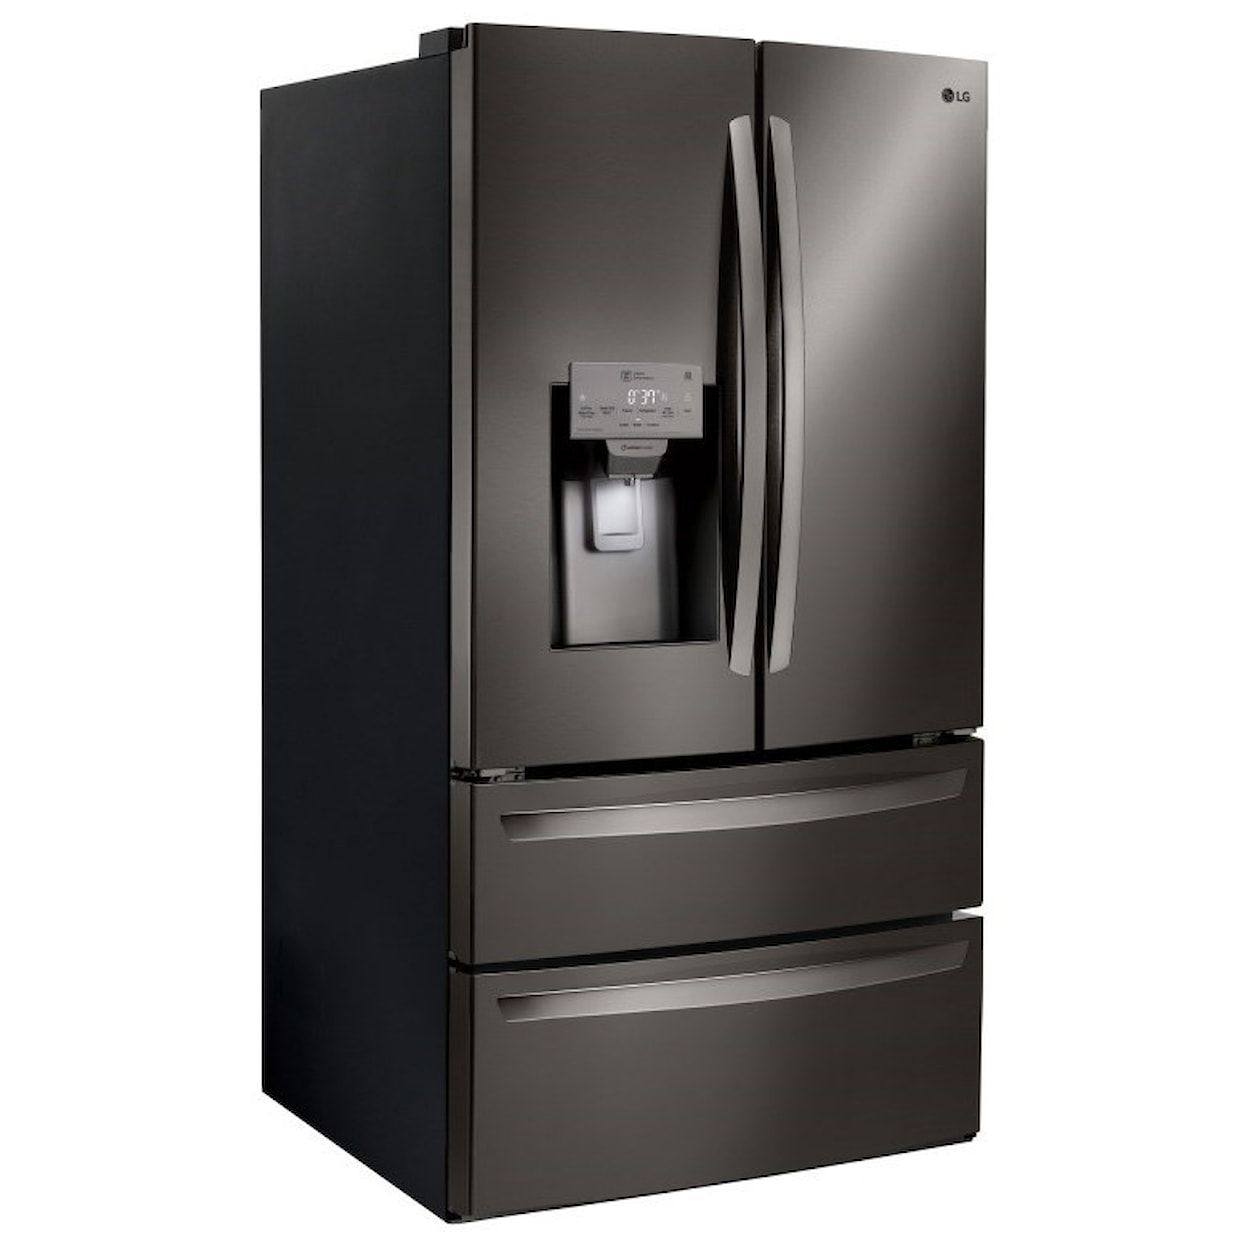 LG Appliances French Door Refrigerators 28 cu.ft. Capacity 4-Door French Door Fridge